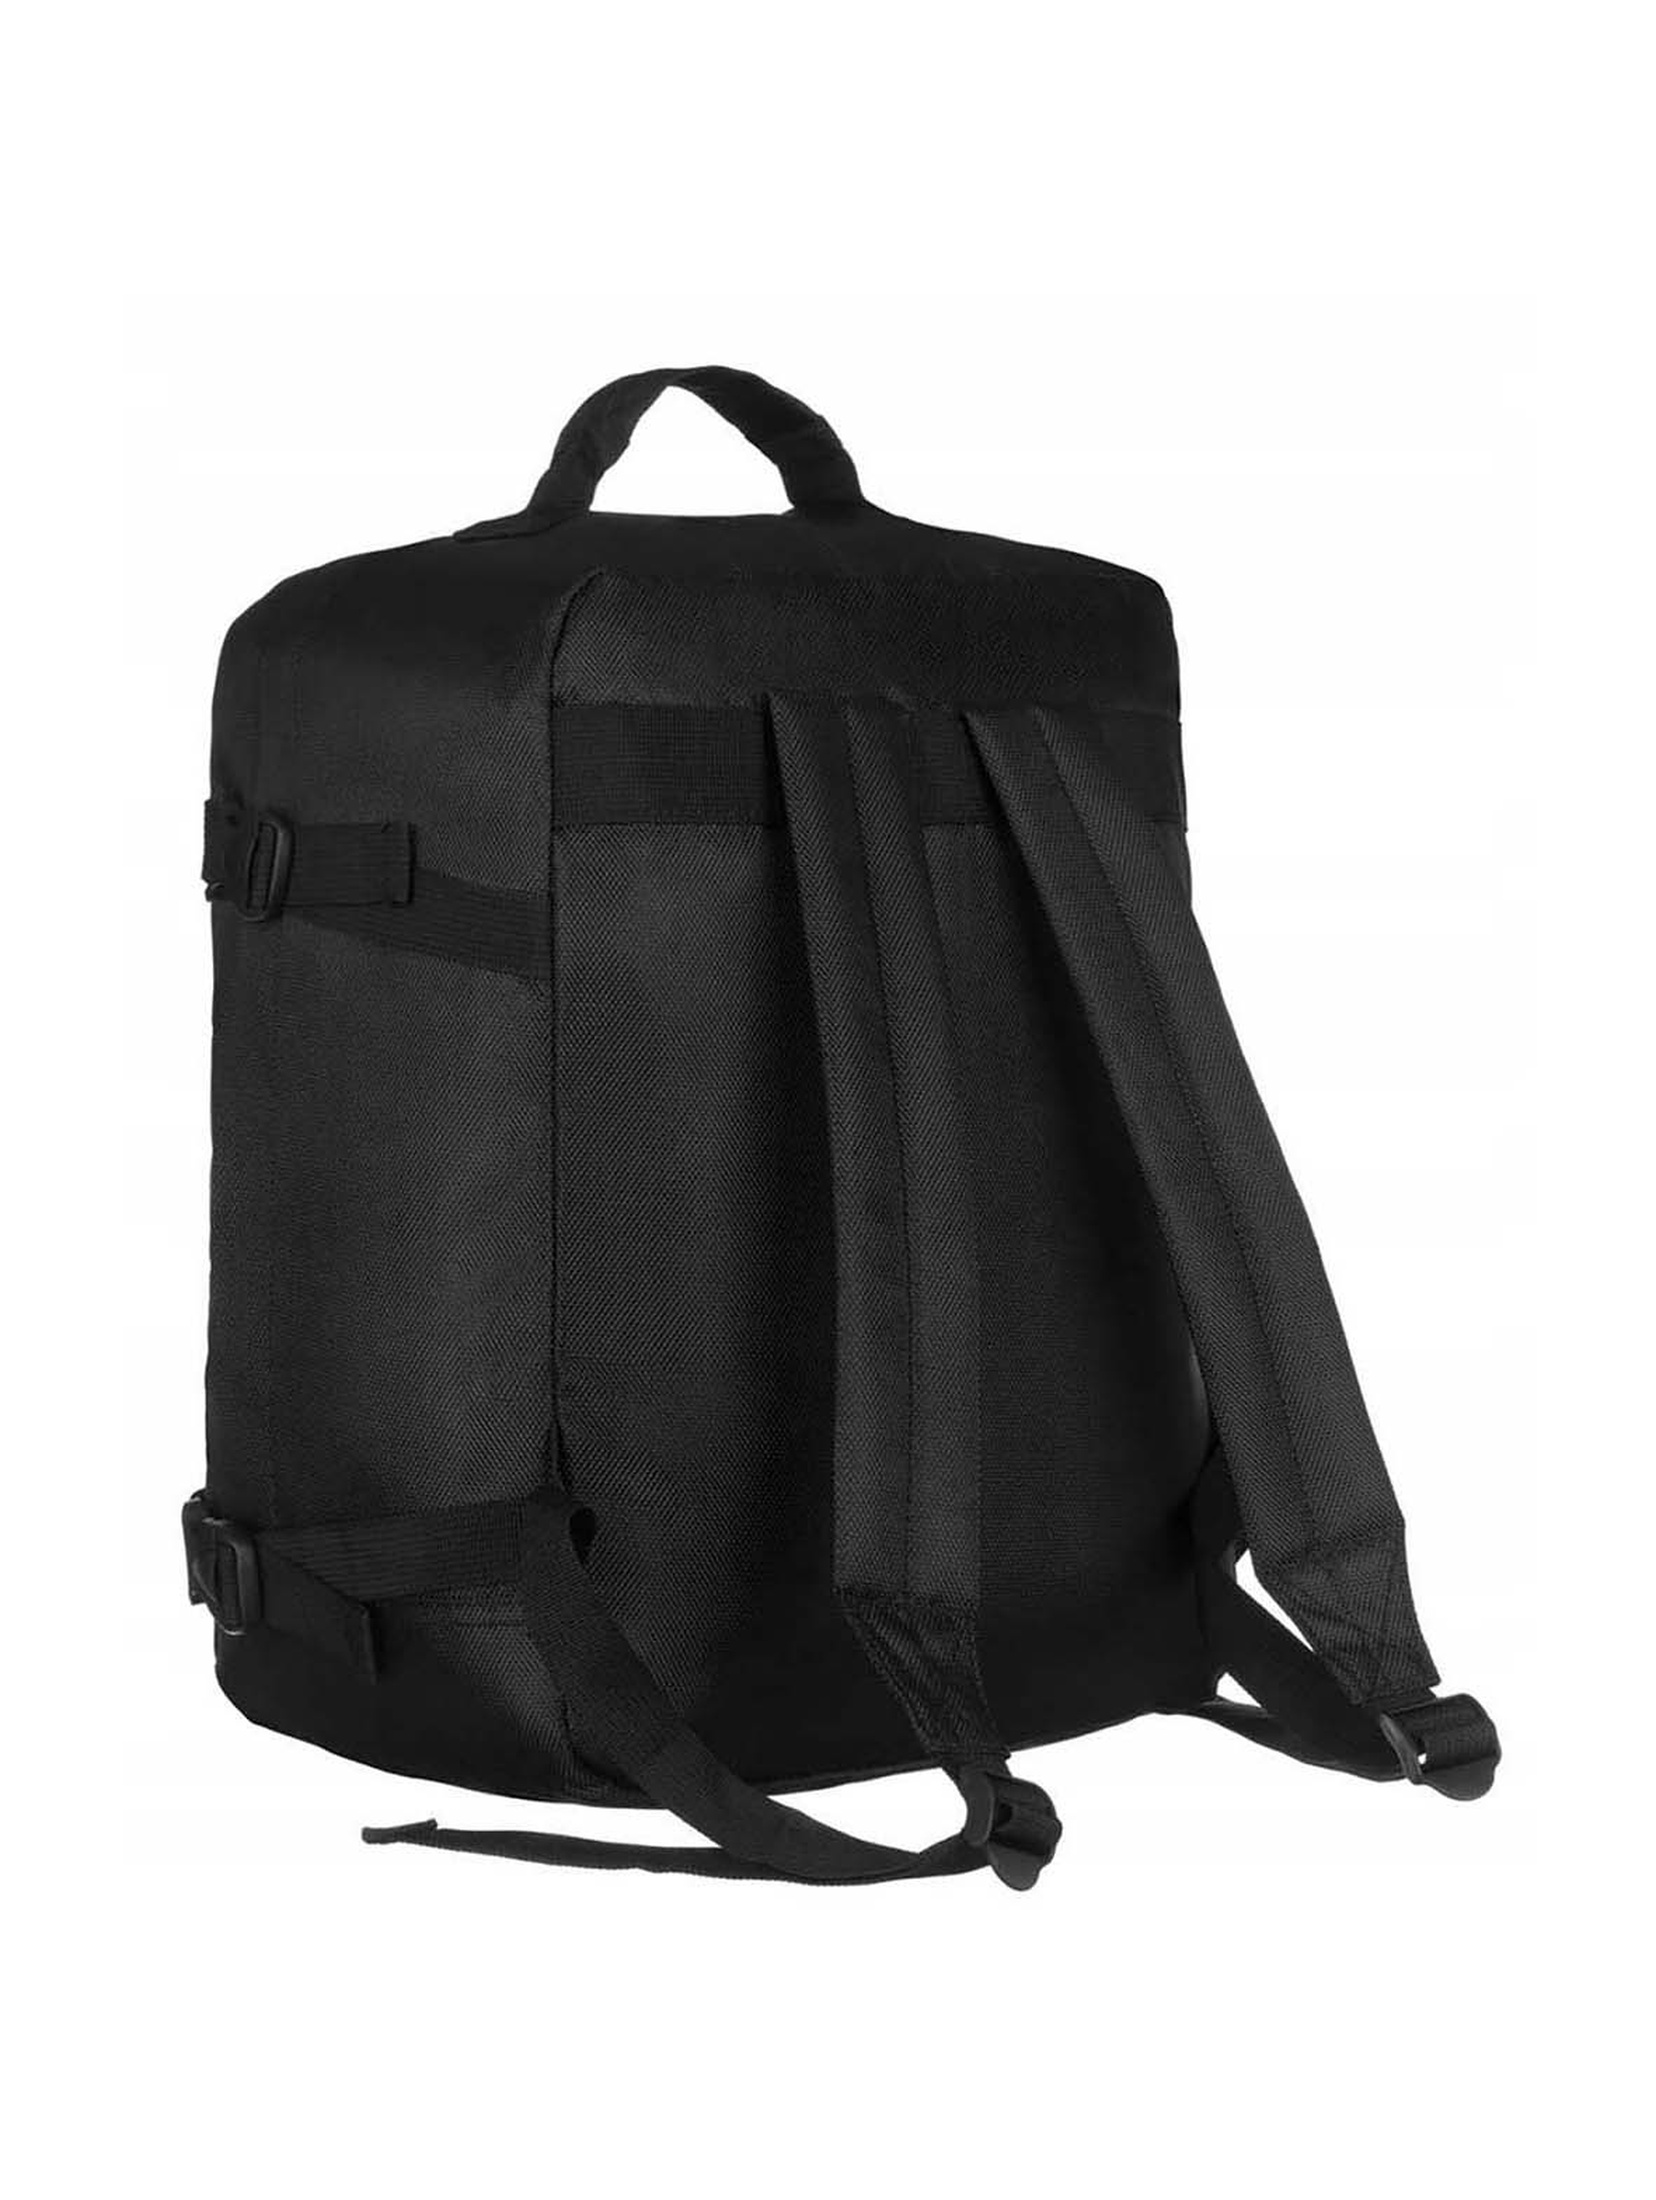 Duży, podróżny plecak czarny z poliestru - Rovicky